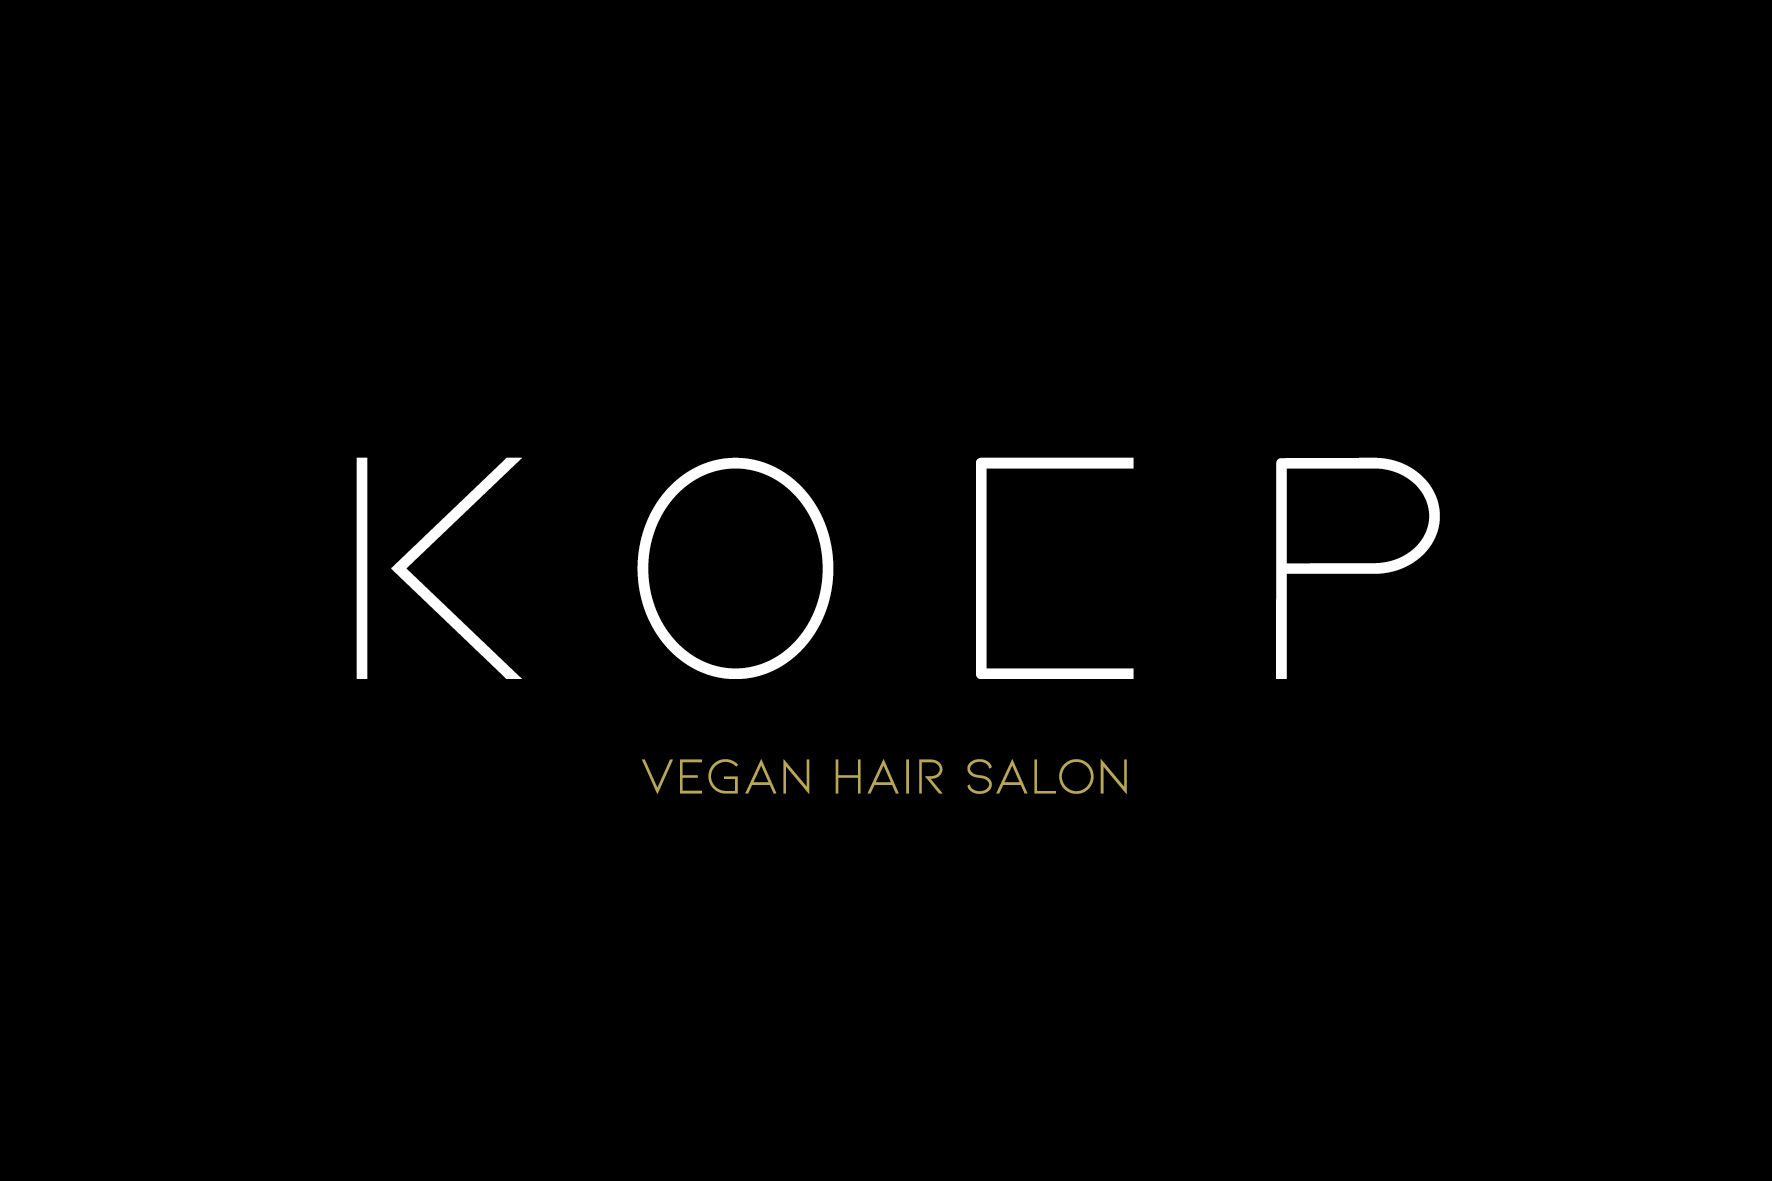 Koep vegan hair salon